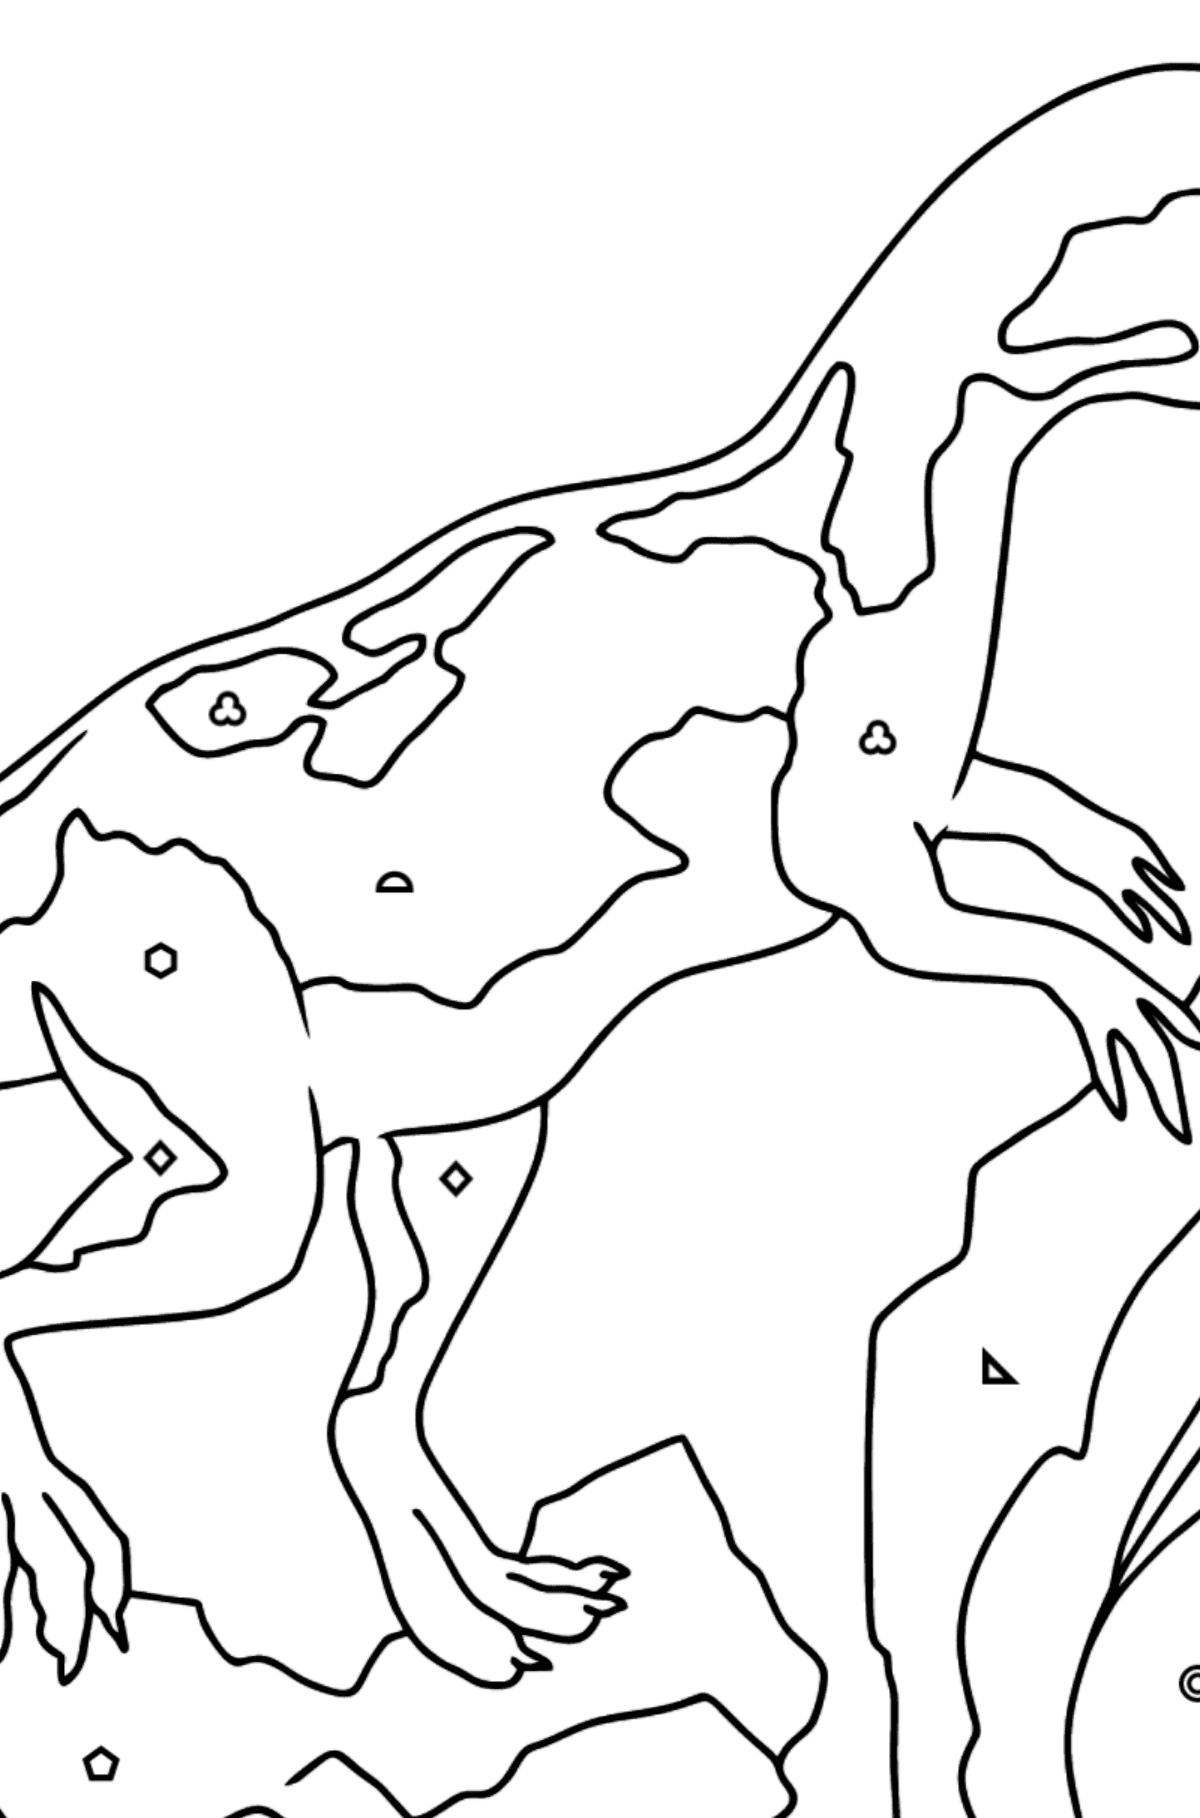 Аллозавр Раскраска - Картинка высокого качества для Детей